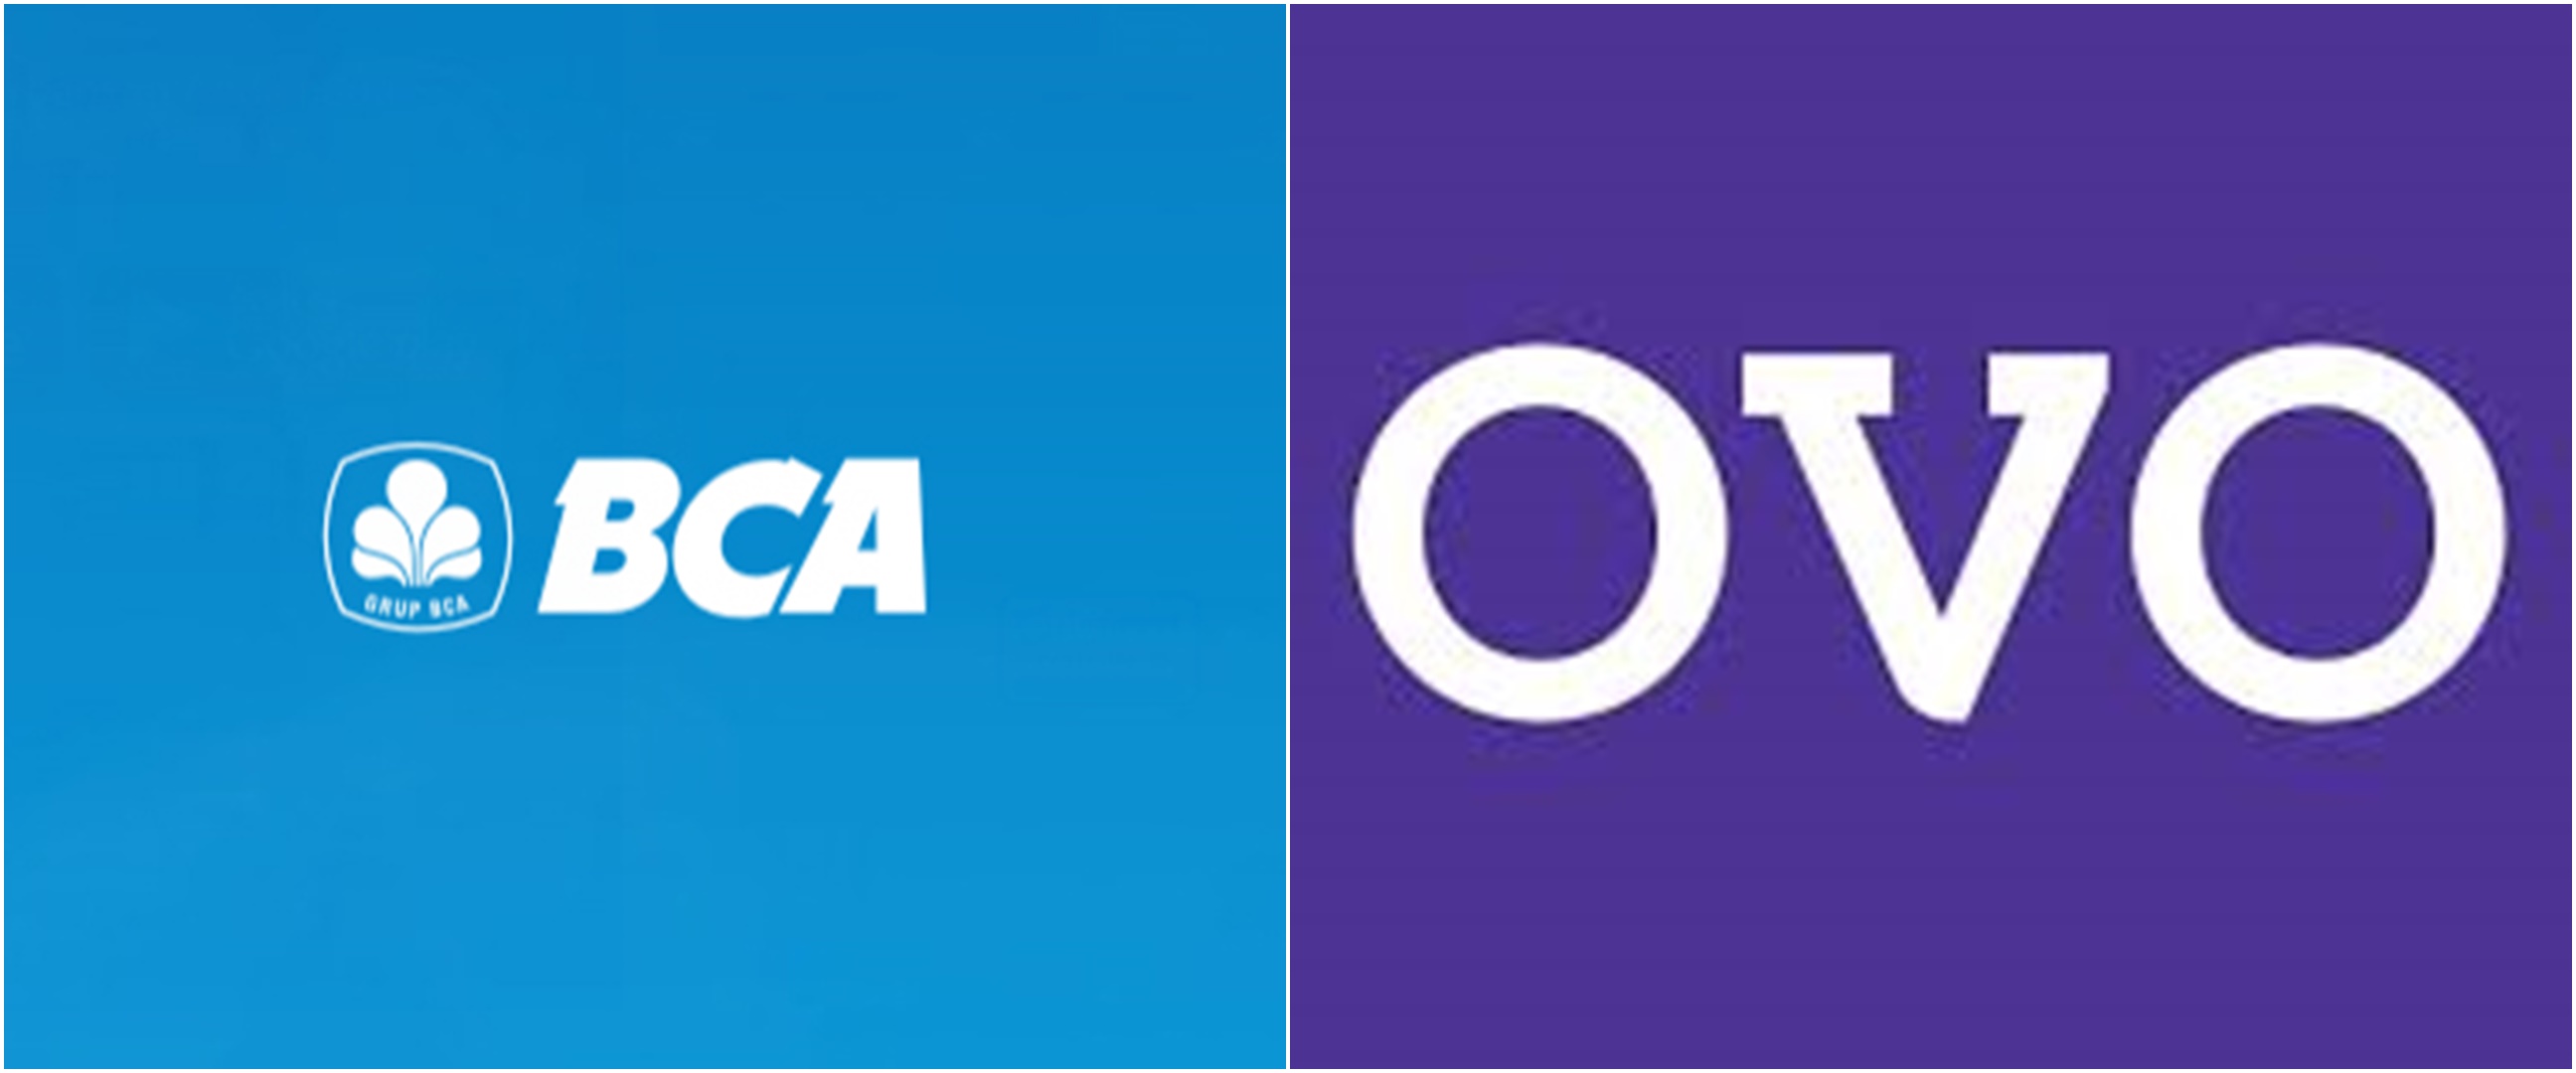 7 Cara transfer BCA ke OVO, bisa lewat ATM hingga m-banking